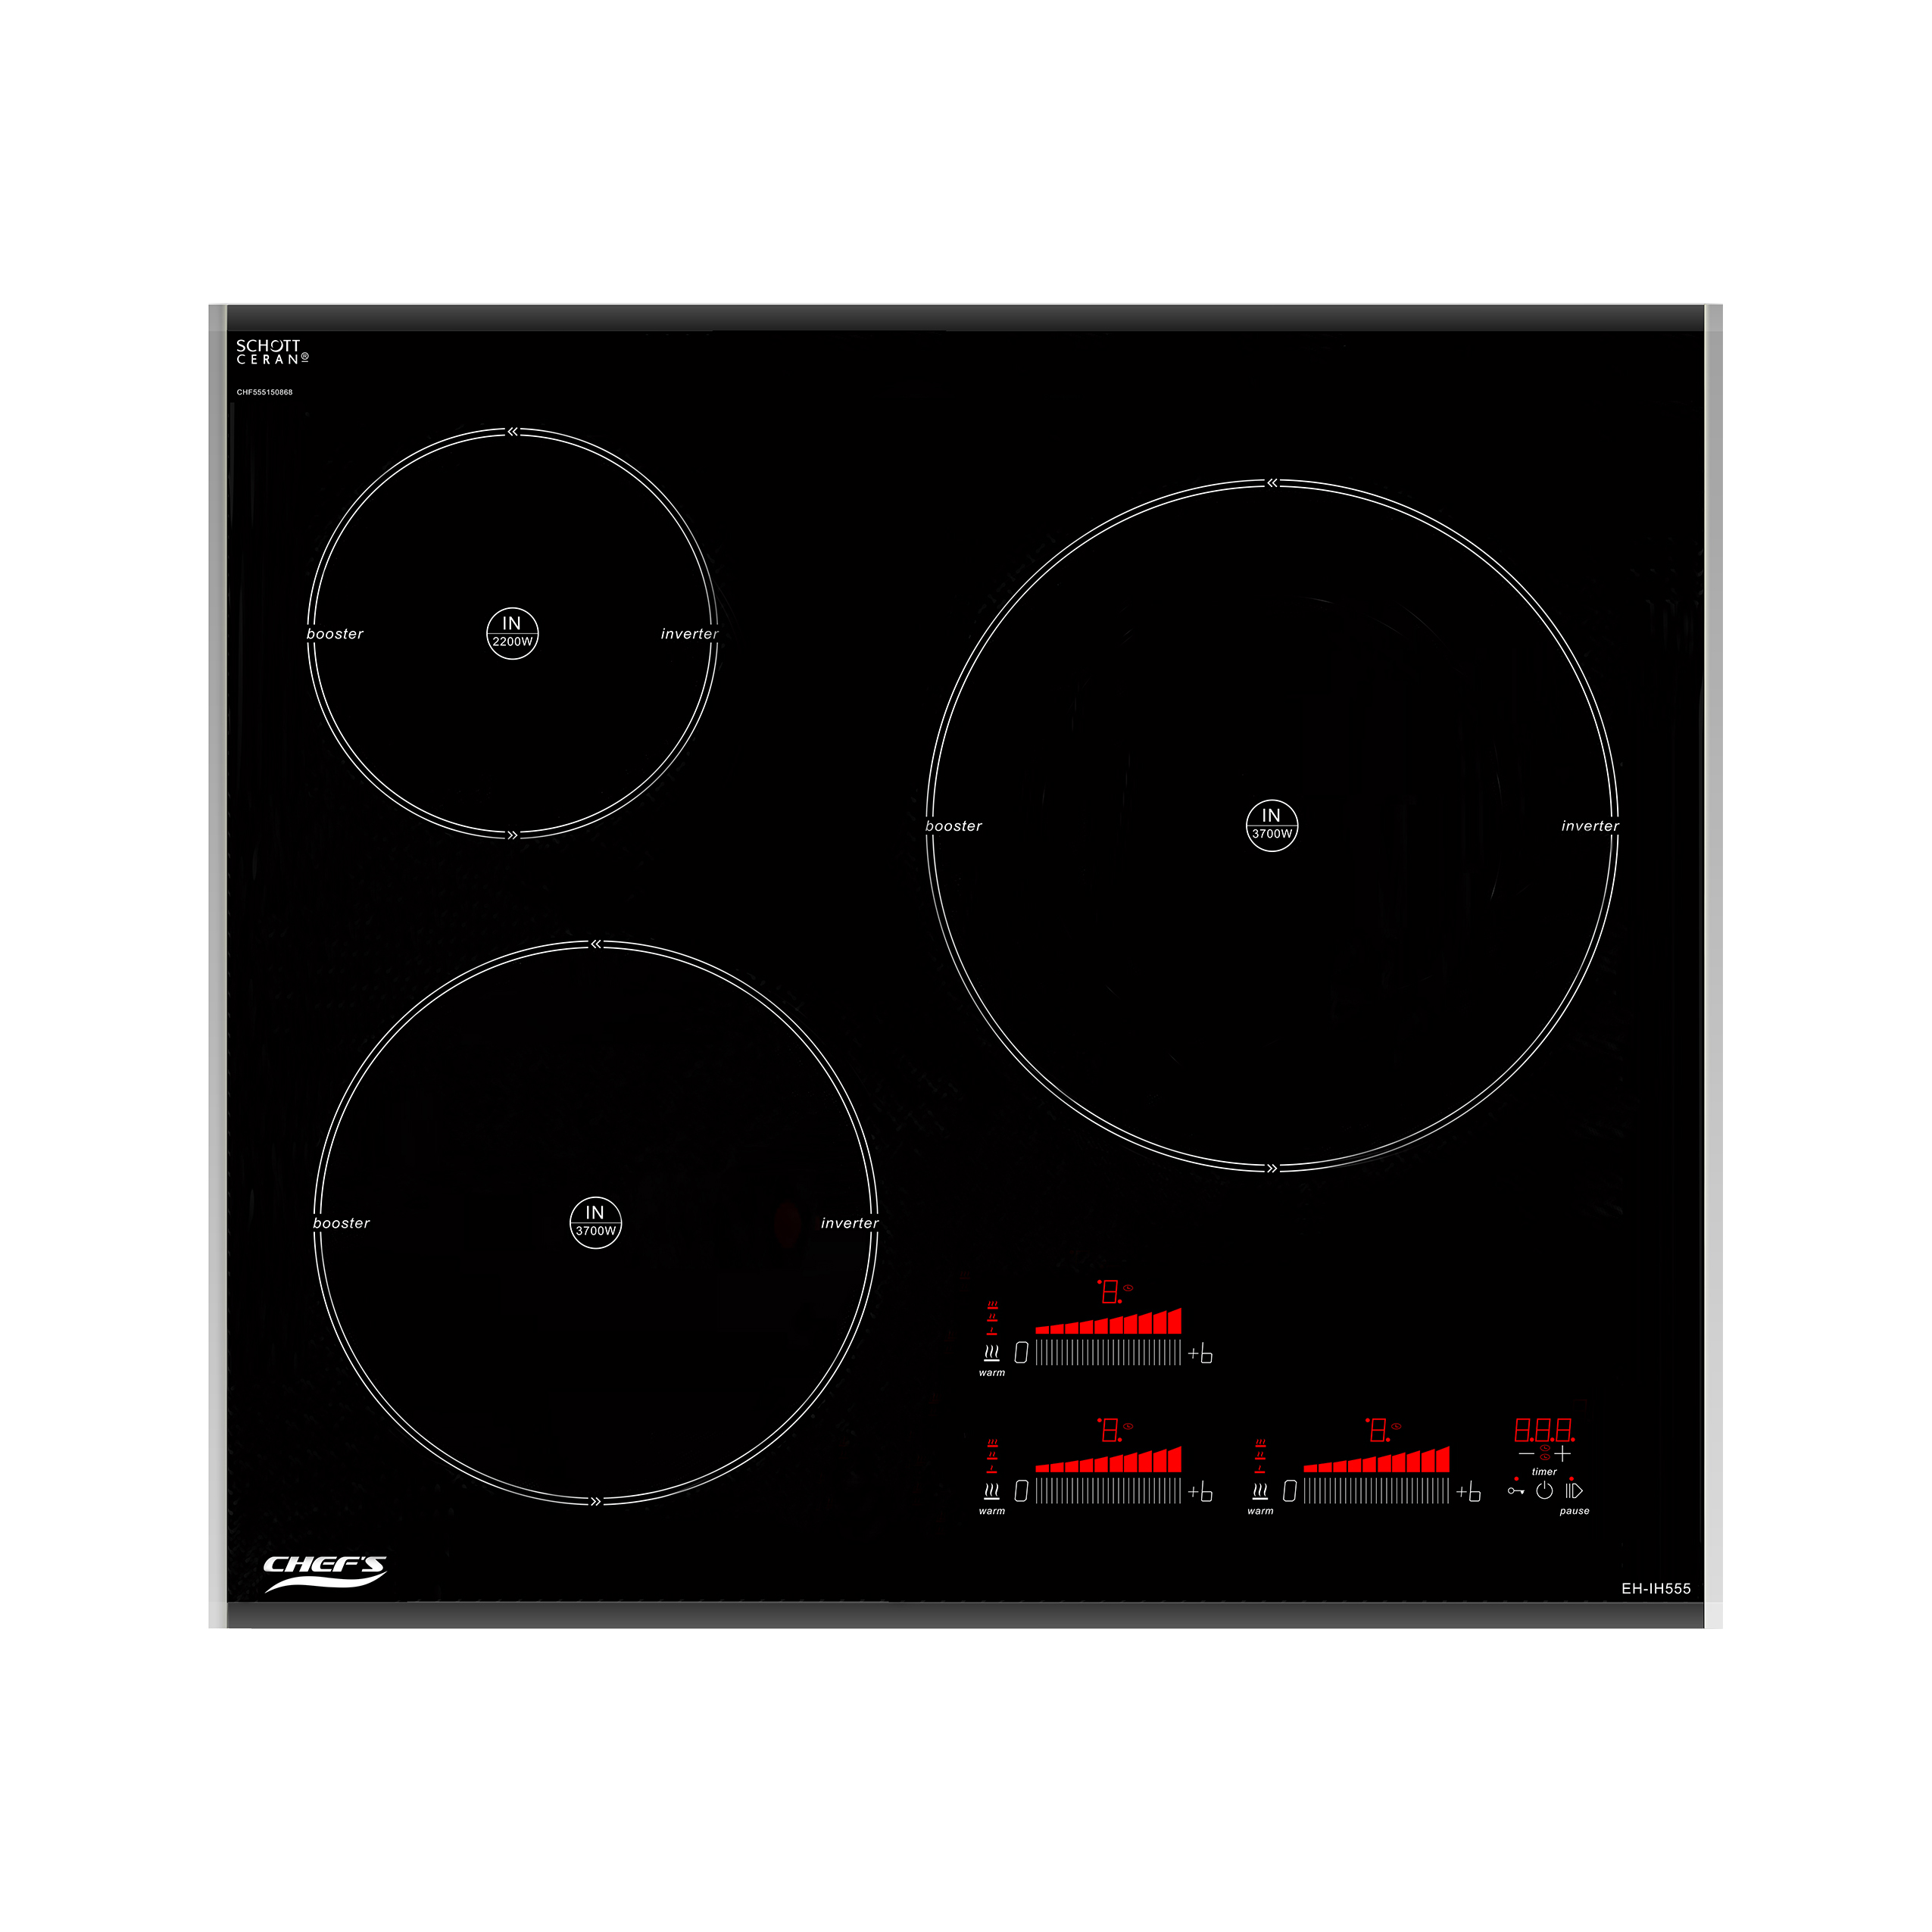 Bếp Từ CHEF'S EH-IH555 - 3 vùng nấu từ, Inverter thông minh, Cảm ứng 9 mức công suất, Cảm biến an toàn